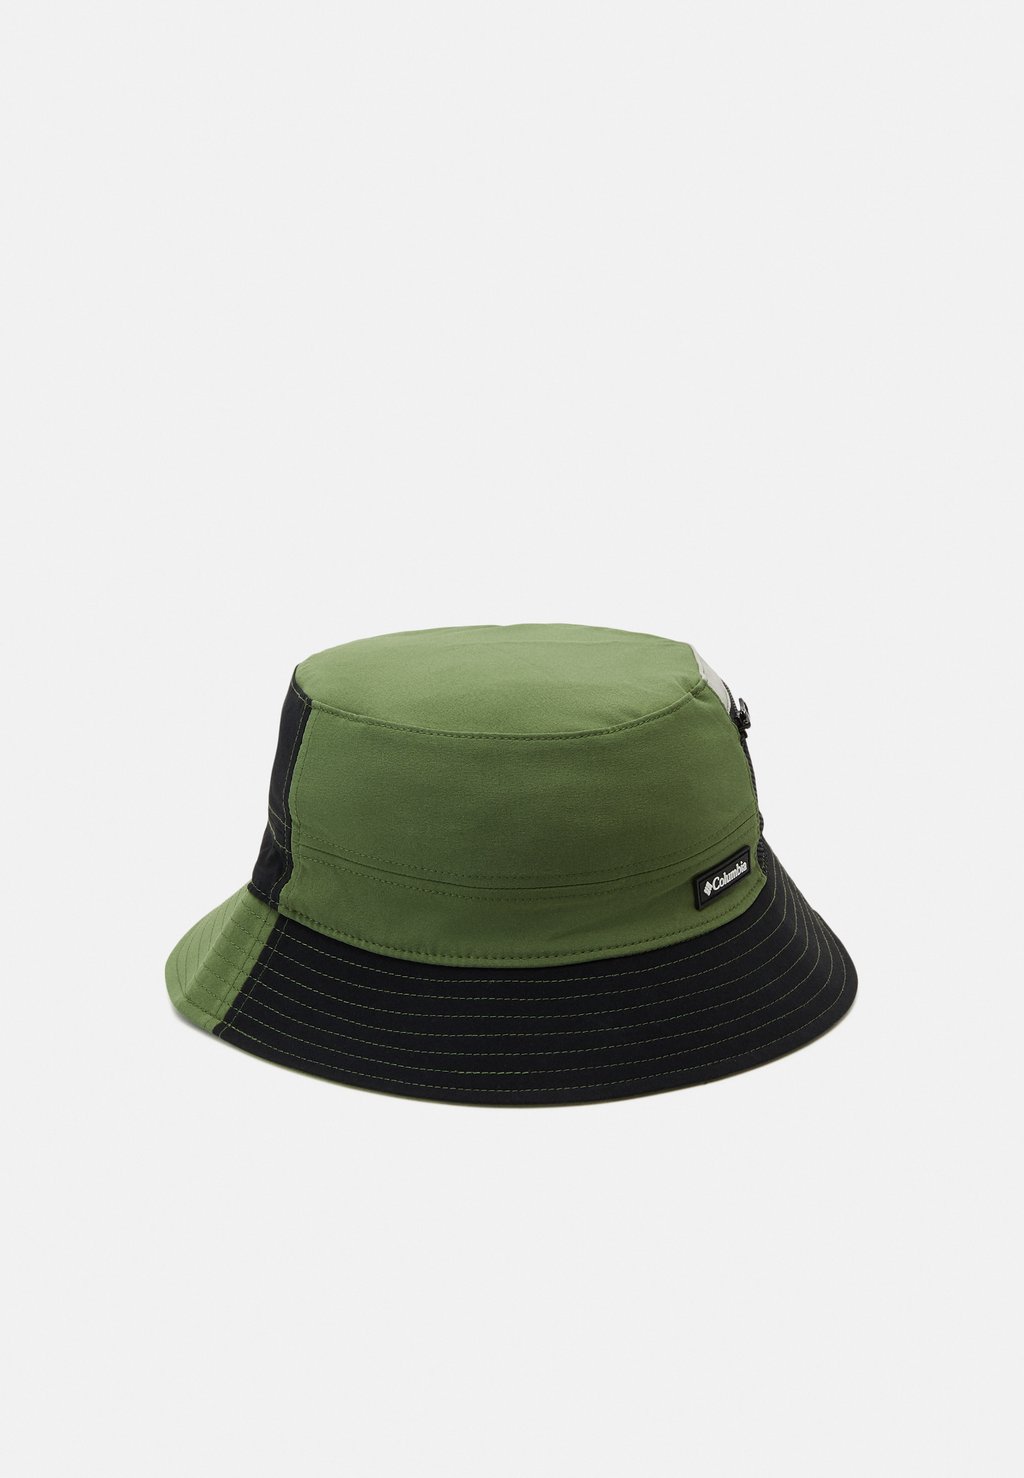 Панама BUCKET HAT UNISEX Columbia, цвет canteen/black панама flora bucket hat unisex santa cruz цвет green